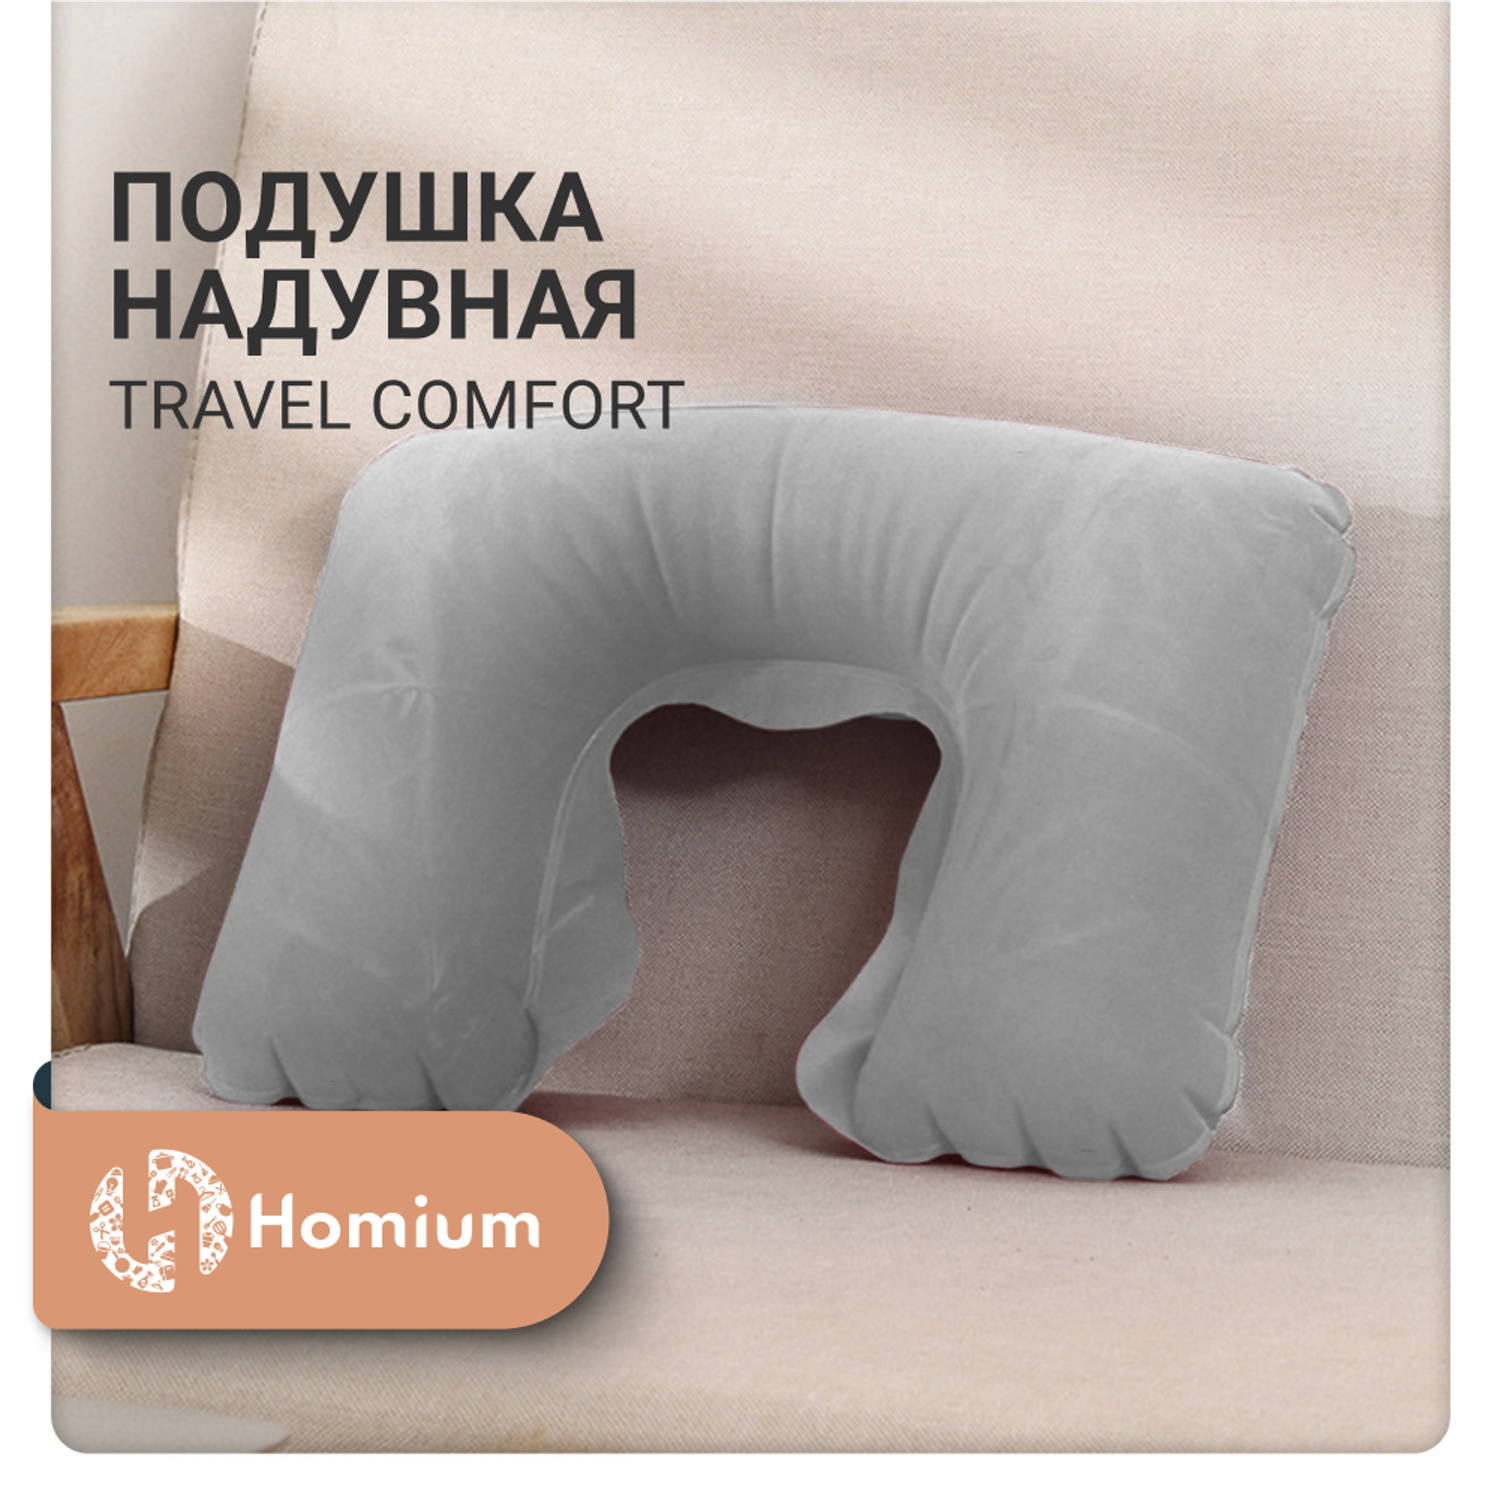 Подушка надувная ZDK Homium Travel Comfort дорожная цвет серый - фото 3